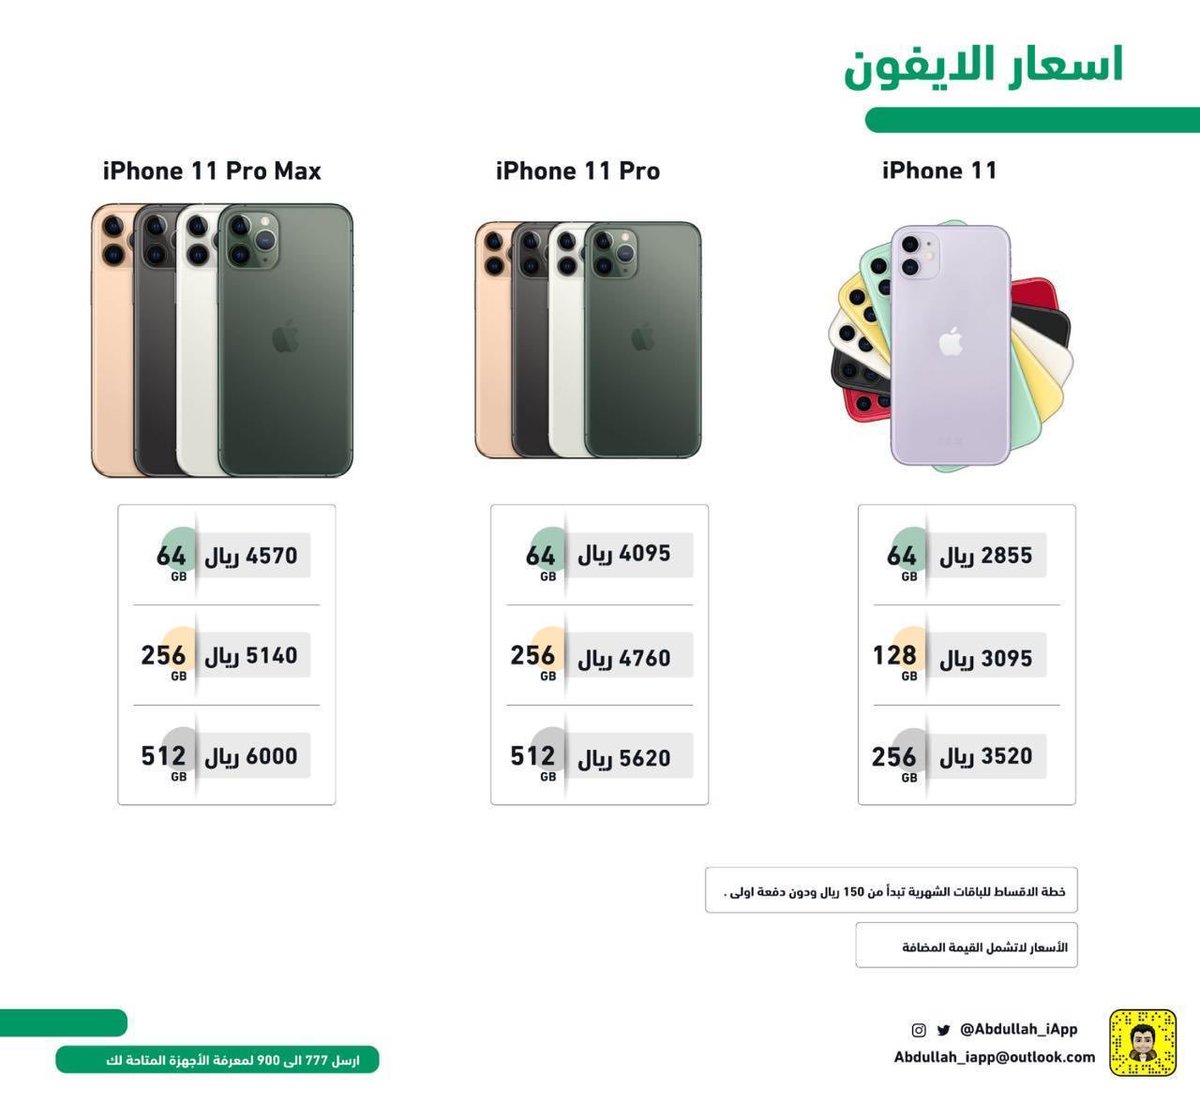 عبدالله السبيعي S Tweet اليوم يبدأ البيع الرسمي لـ Iphone 11 في